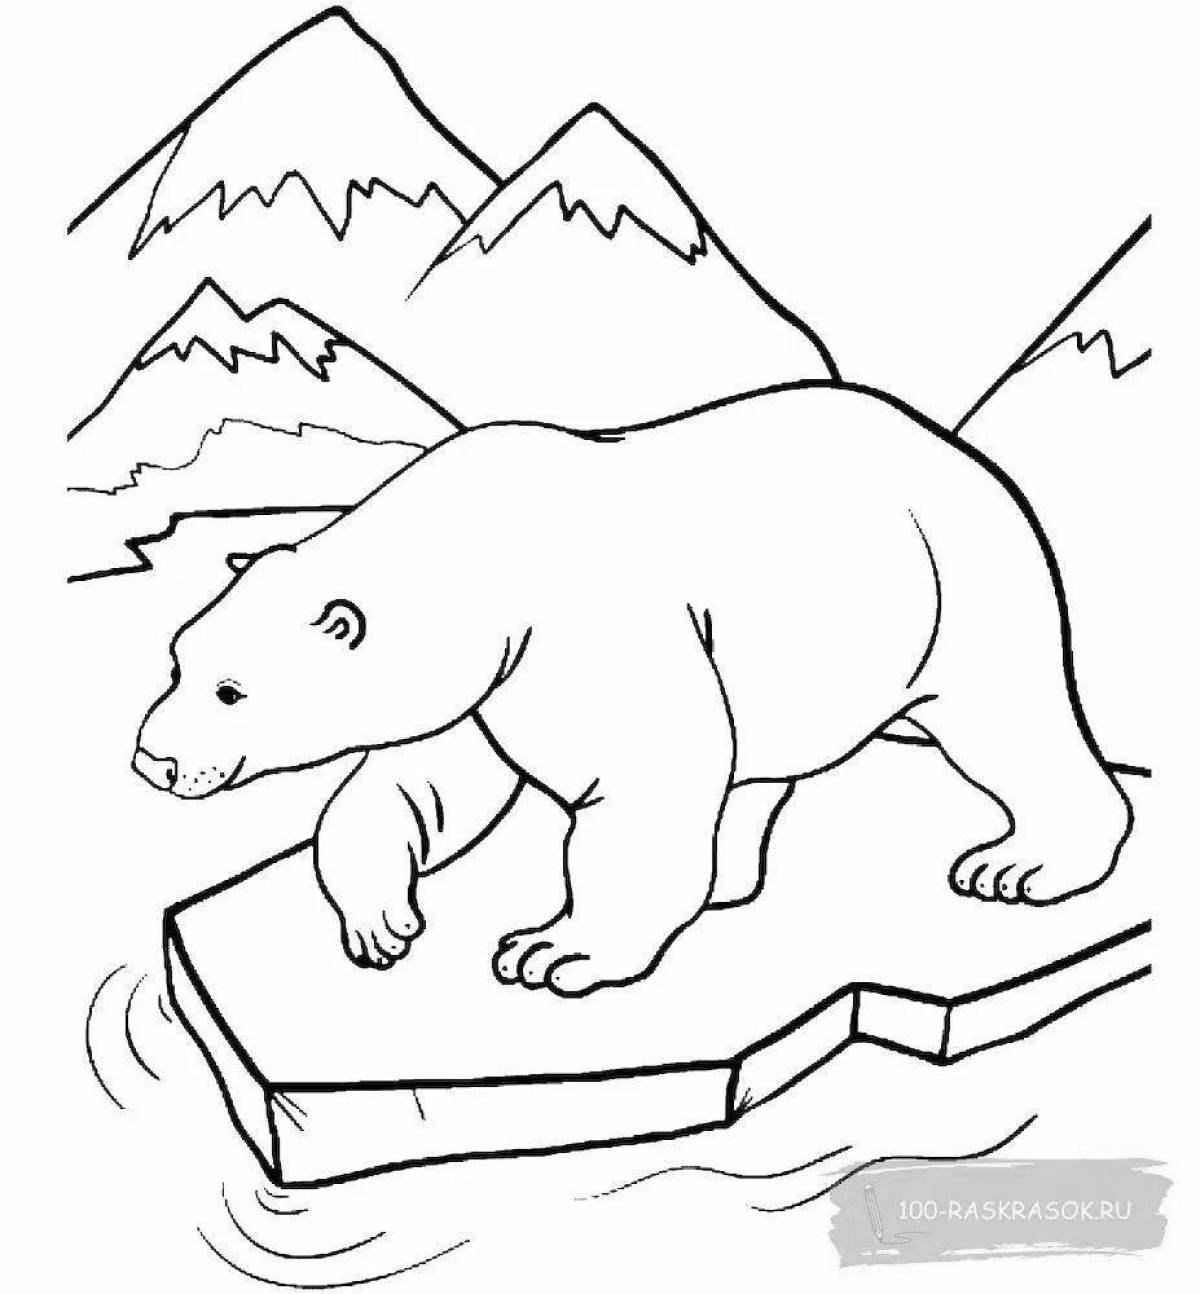 Очаровательная раскраска северного медведя